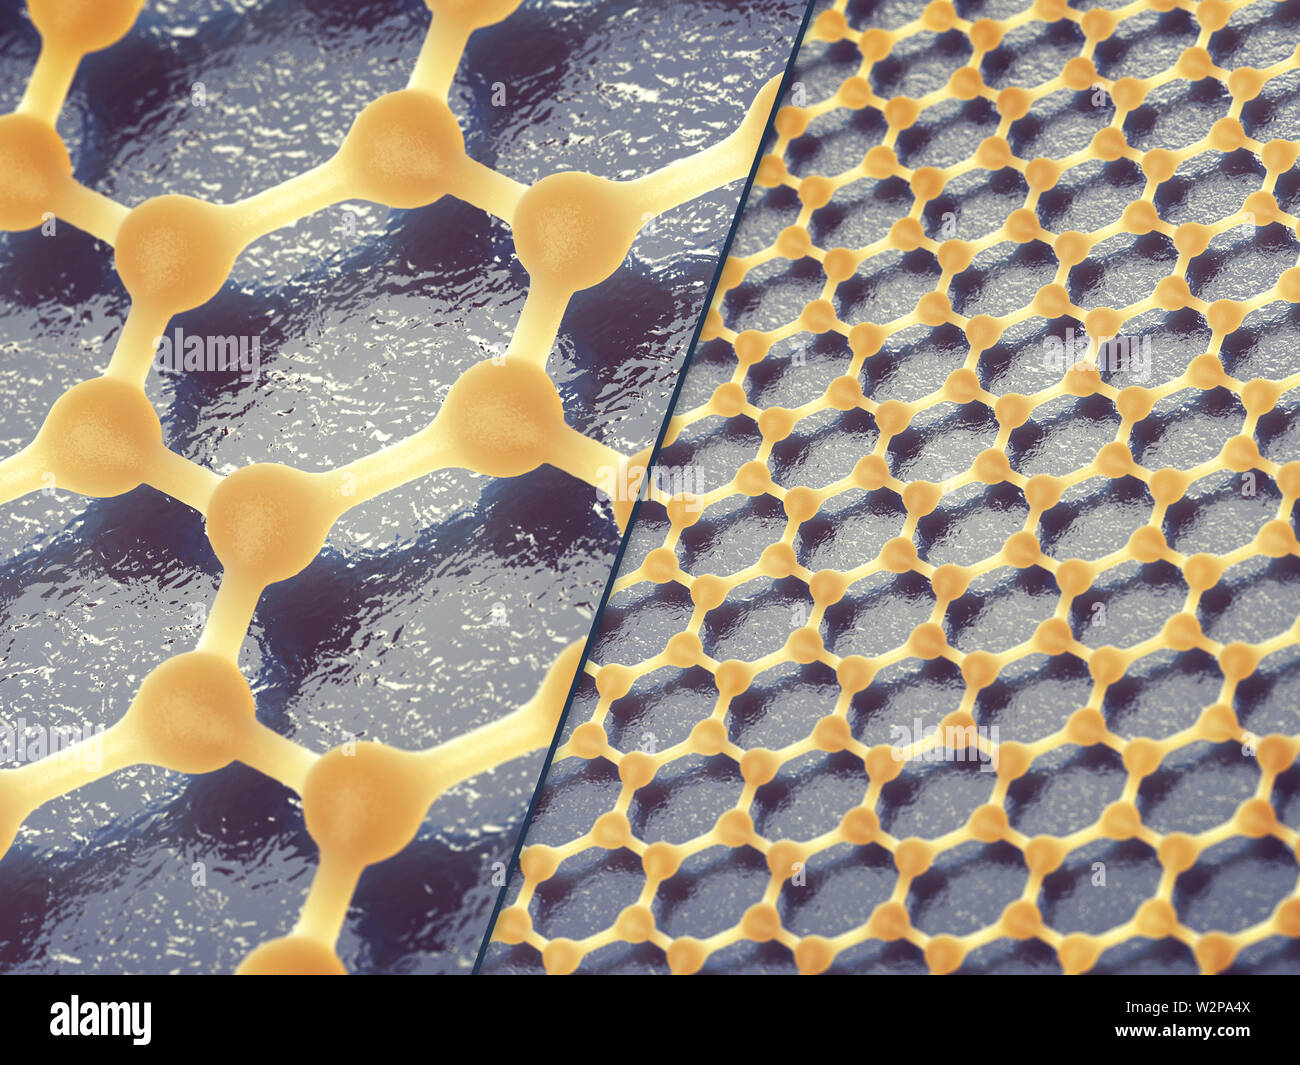 Graphen besteht aus Kohlenstoff- atomen in den sechseckigen Muster verteilt, Graphen Nanotechnologie Stockfoto